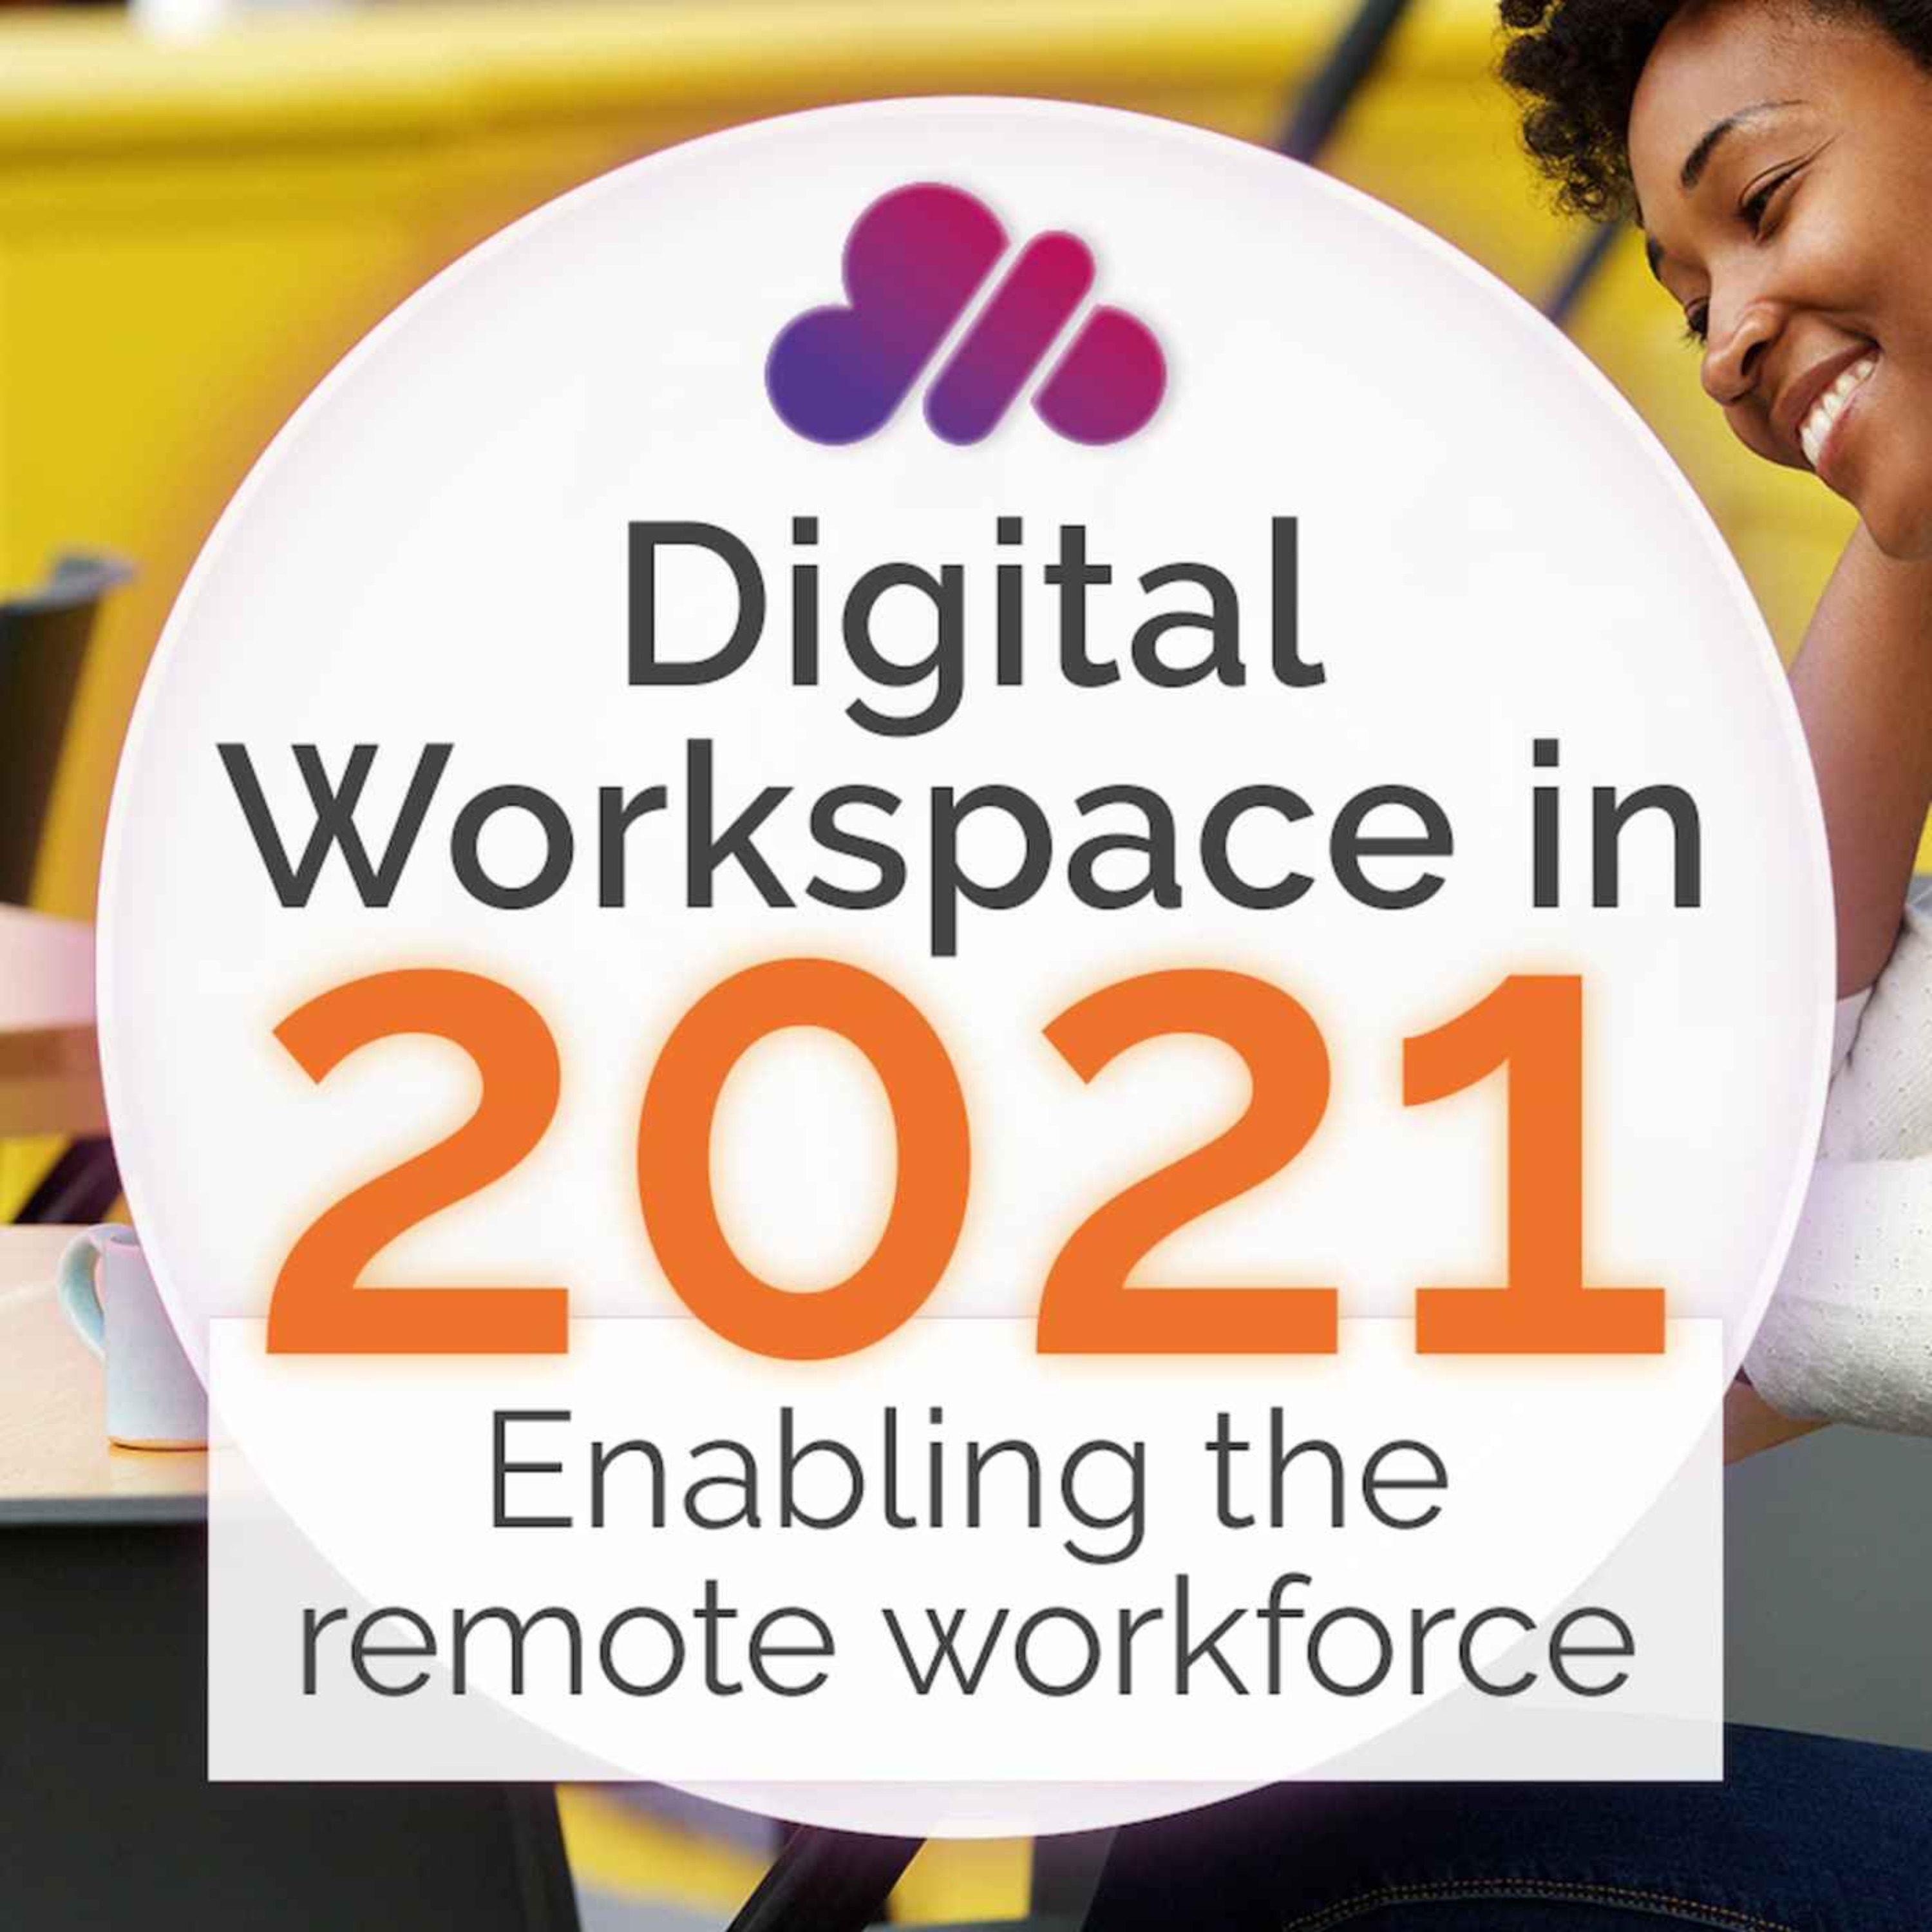 Digital Workspace in 2021